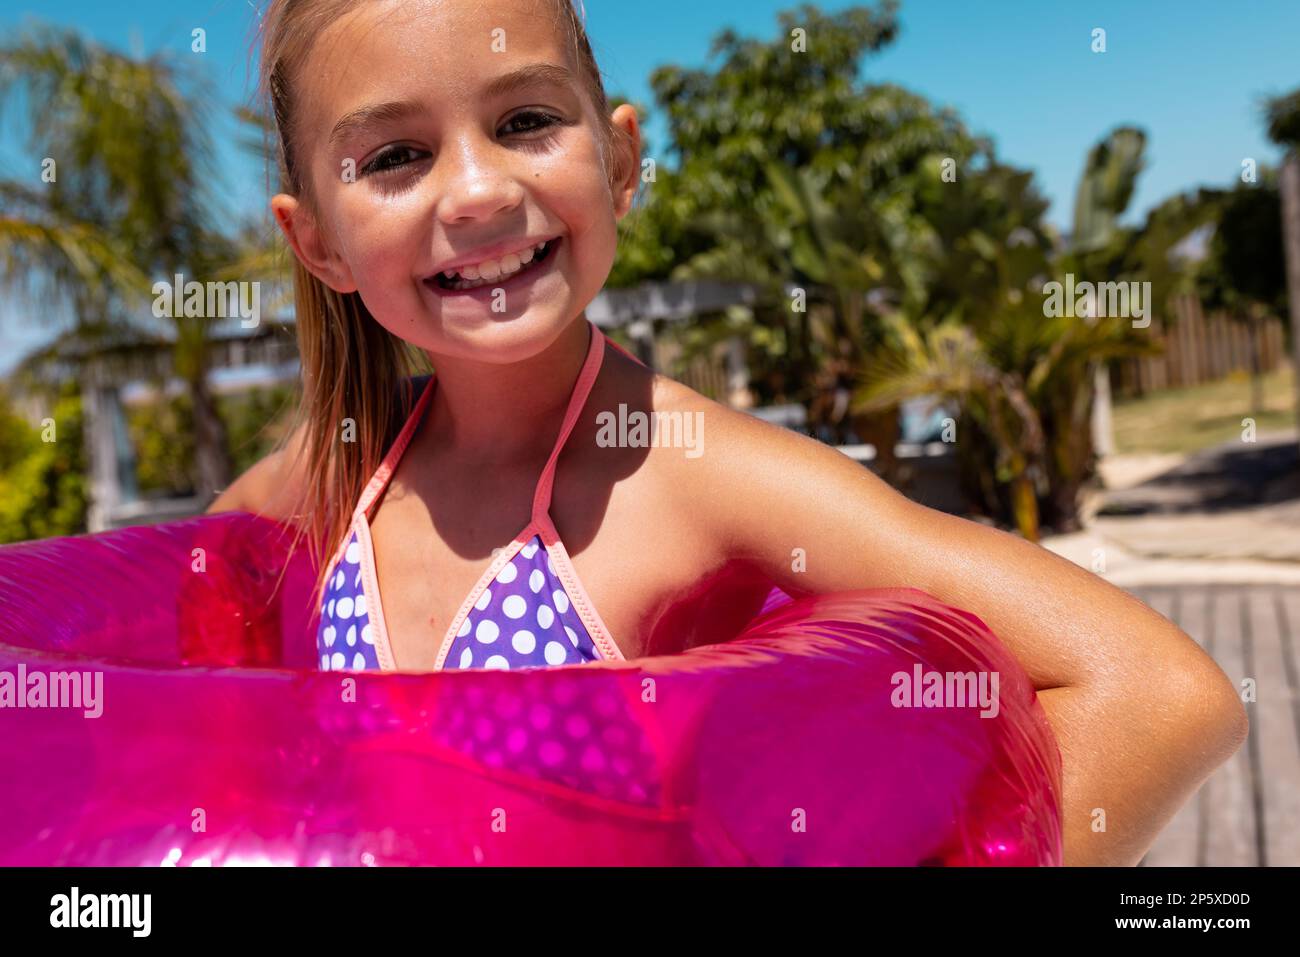 Porträt eines fröhlichen, birassischen Mädchens, das lächelt und einen Schwimmring am Pool hält Stockfoto